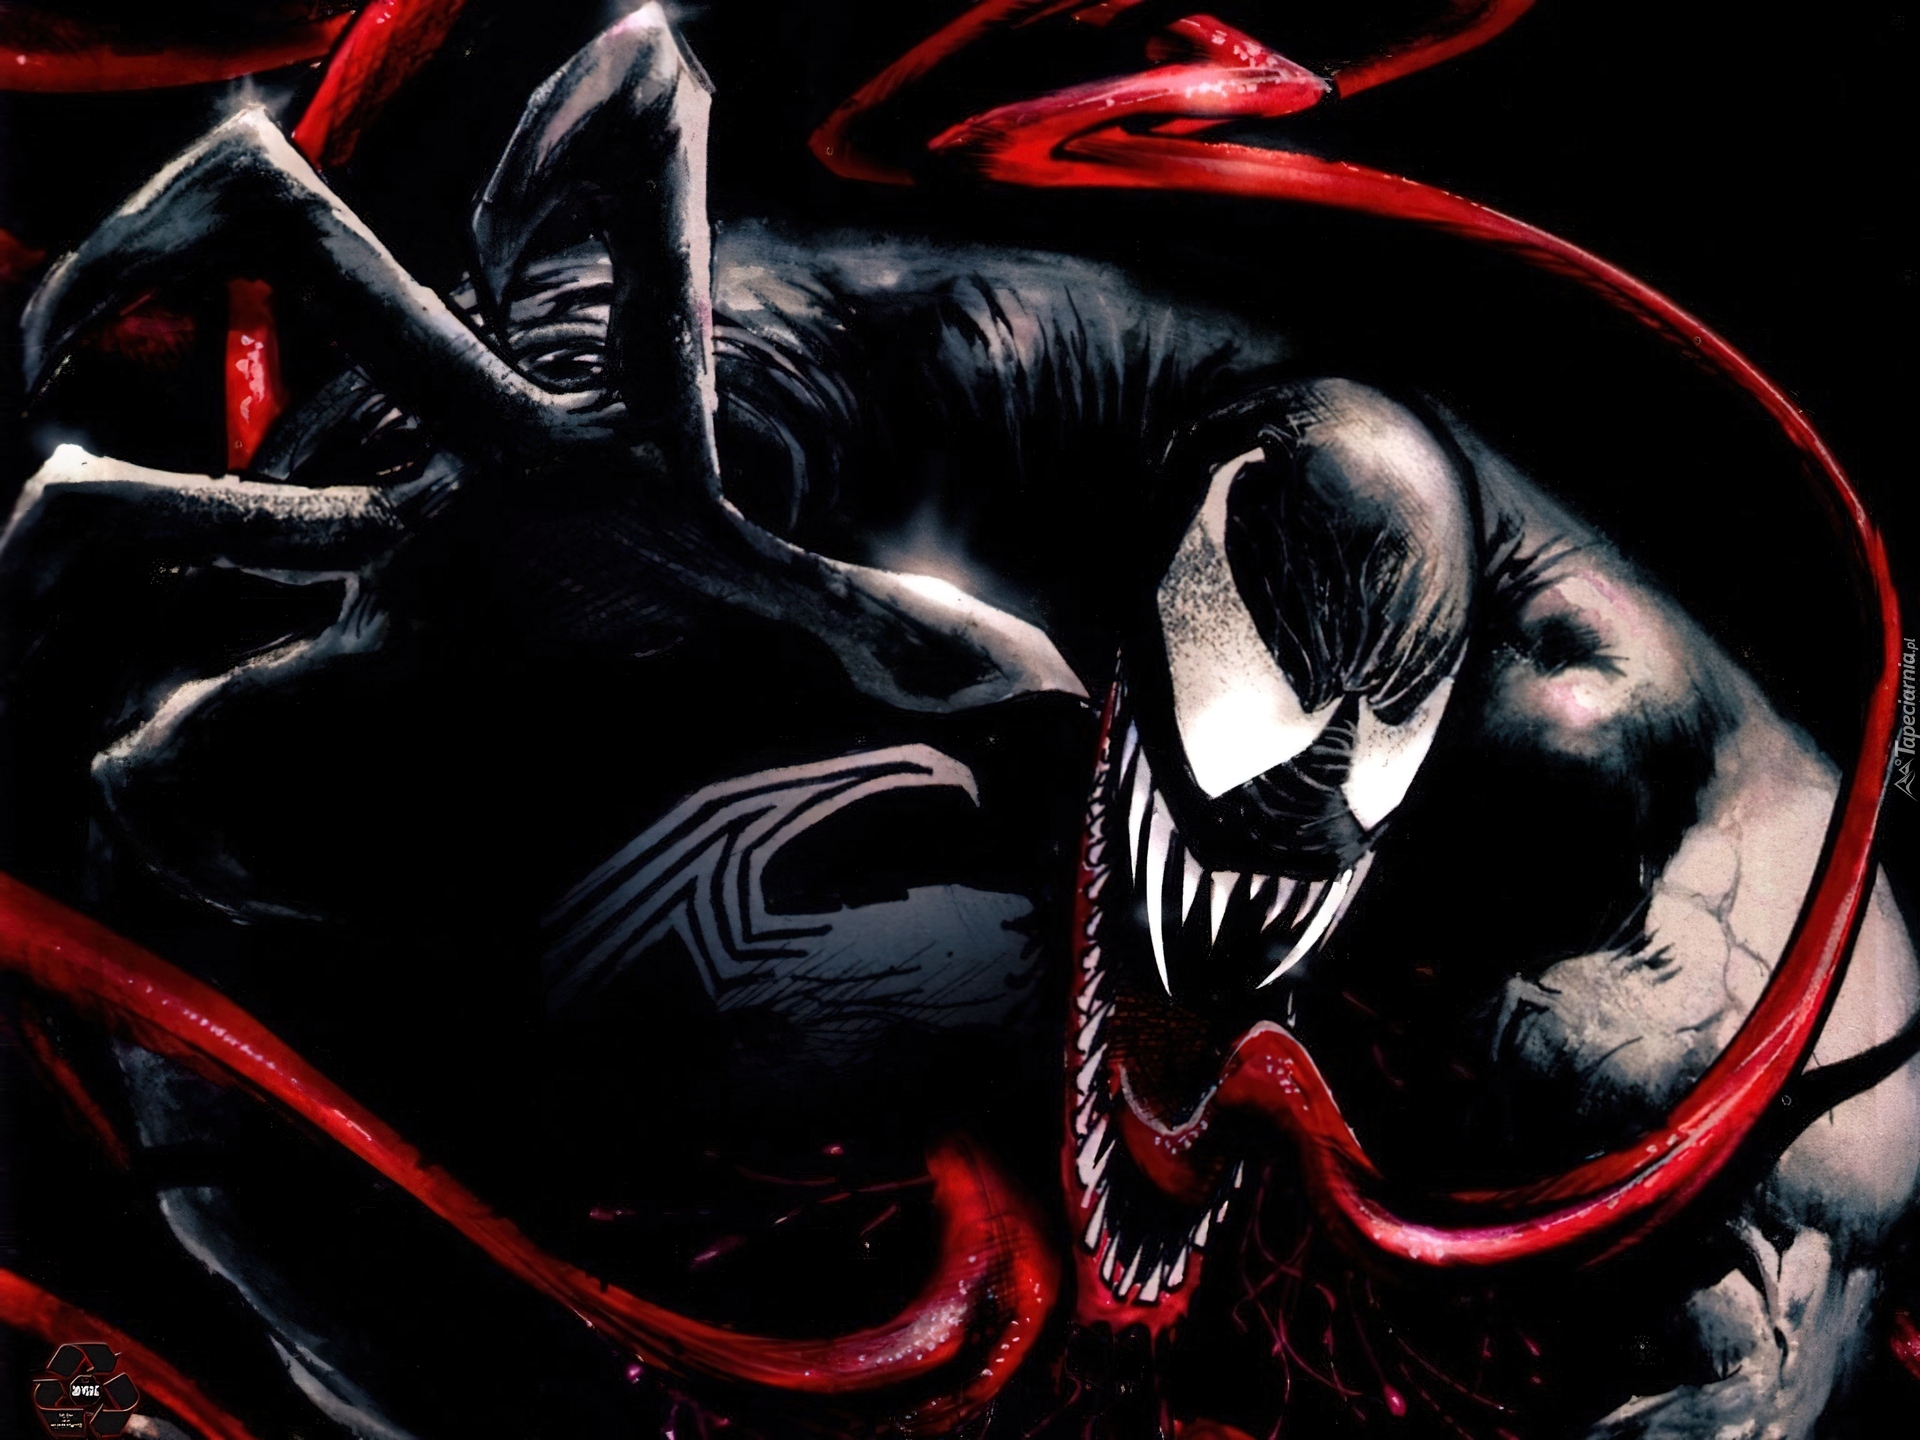 Postać, Venom, Spider-Man 3, Film